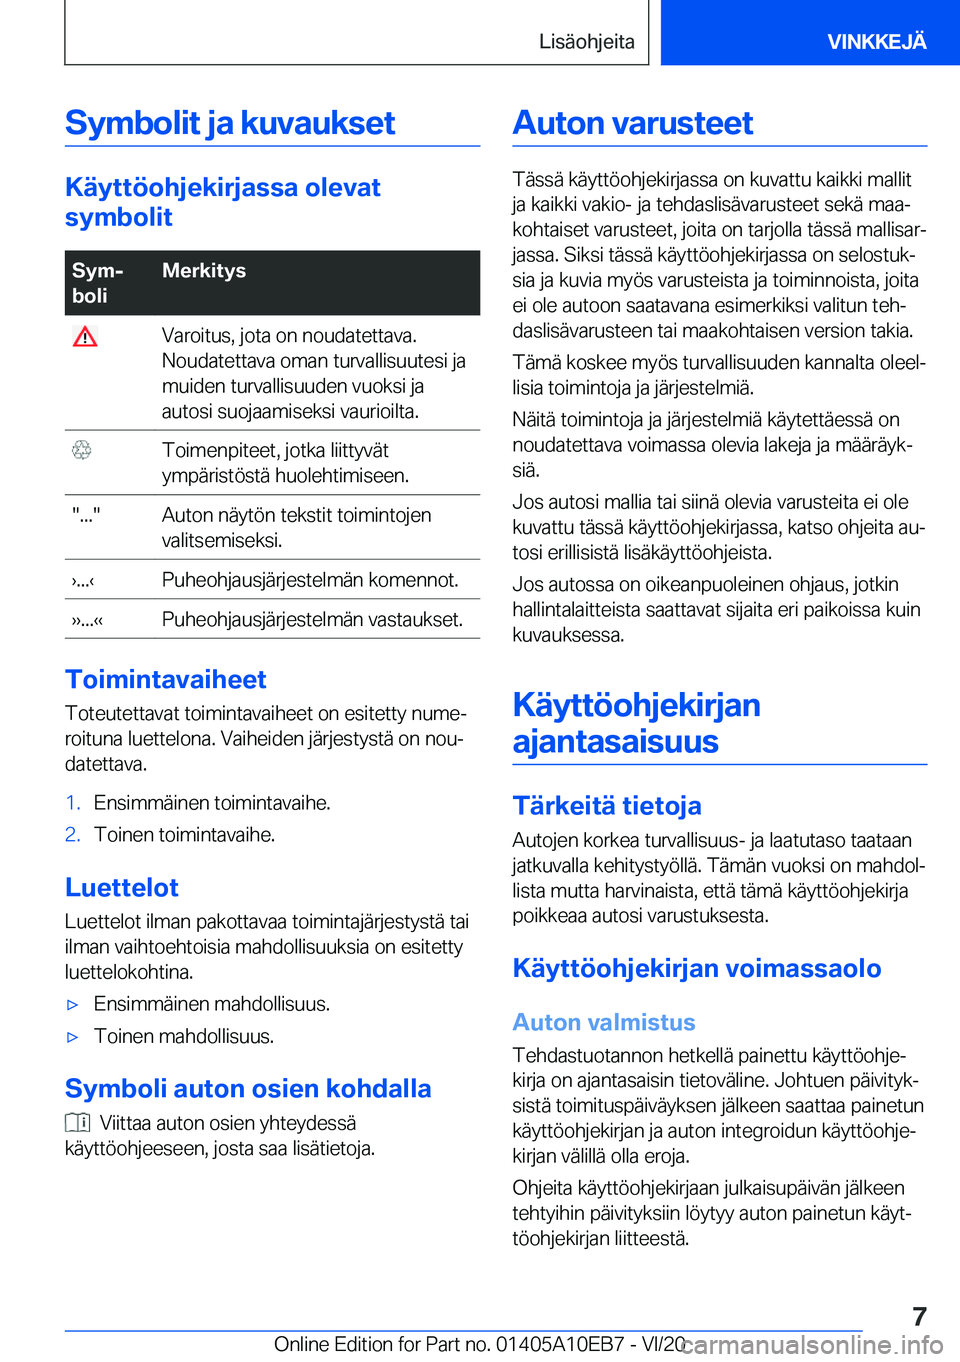 BMW X3 2021  Omistajan Käsikirja (in Finnish) �S�y�m�b�o�l�i�t��j�a��k�u�v�a�u�k�s�e�t
�K�